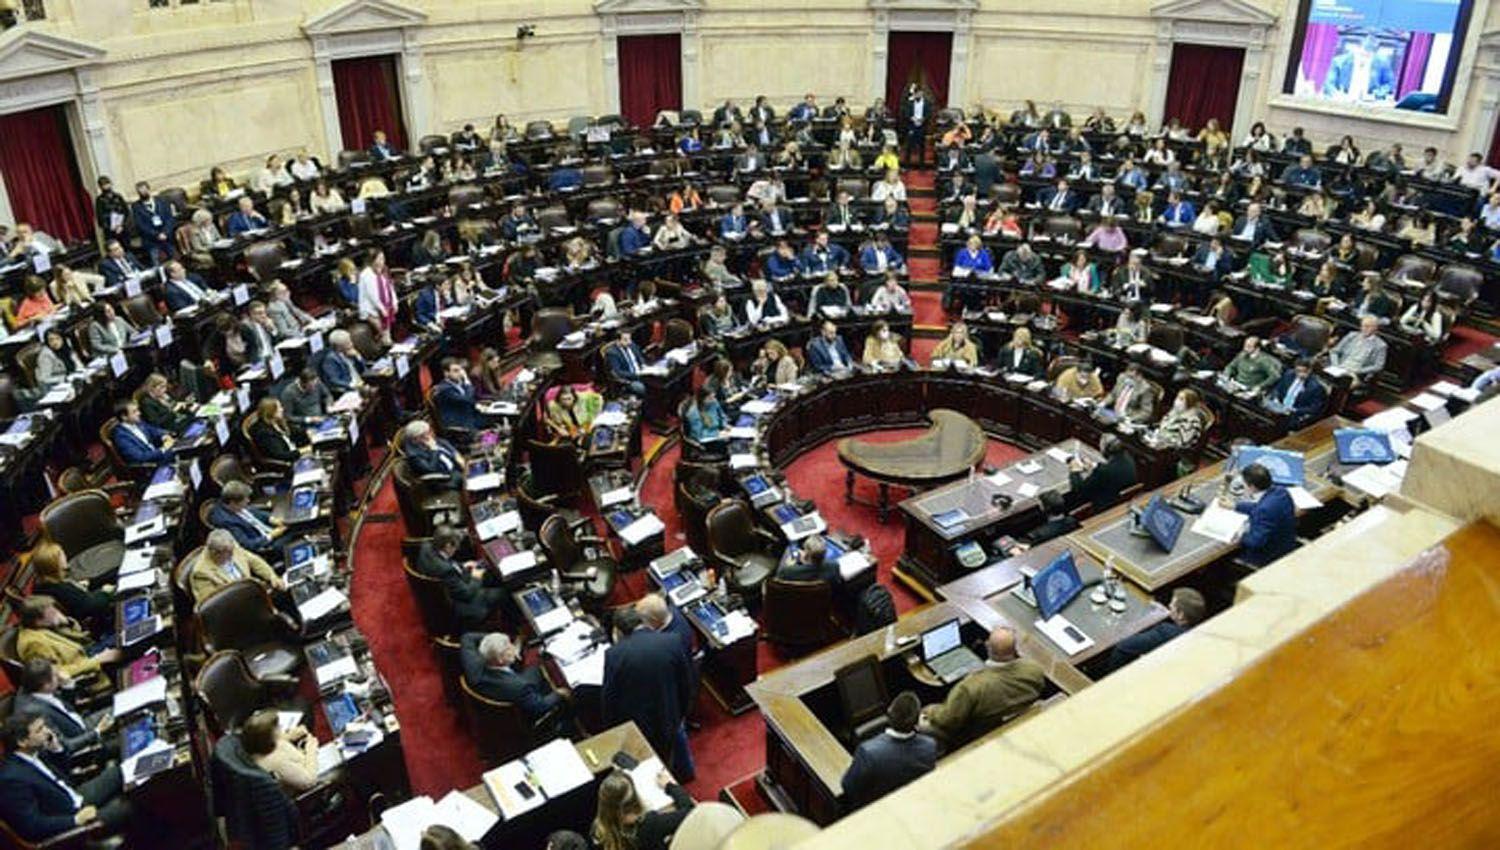 AUMENTO- Los diputados y senadores cobraraacuten cerca de 500000 por mes